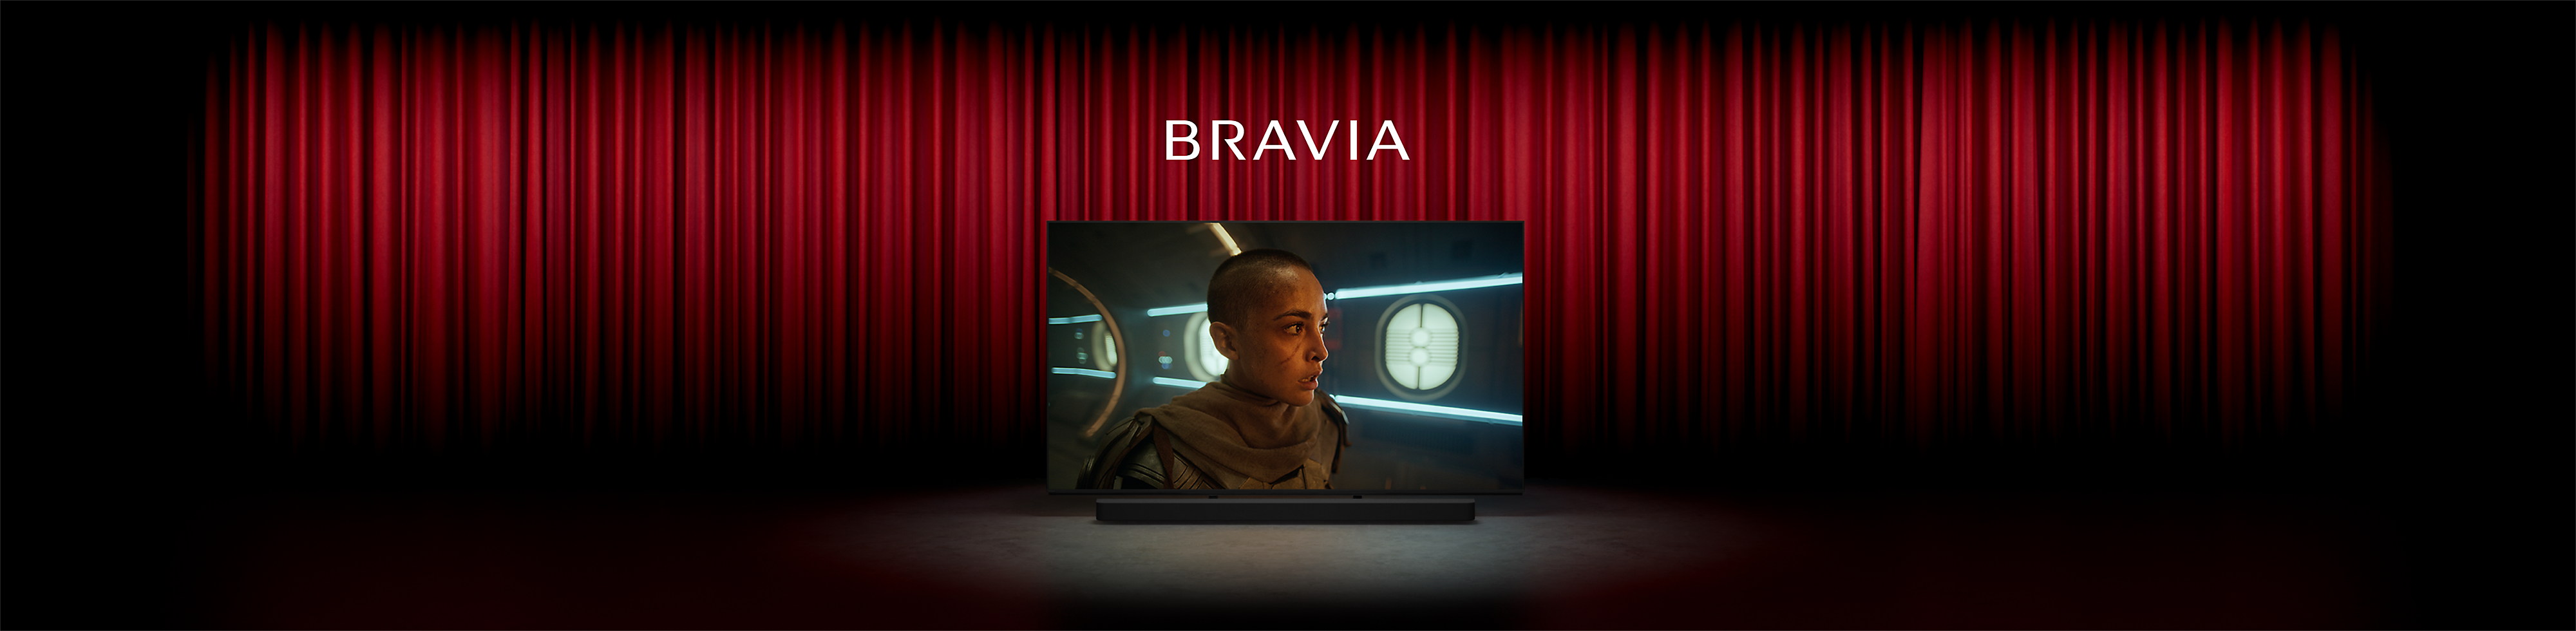 Immagine di un cinema con tende rosse e TV di Sony al centro della scena con schermata di una persona in un film di fantascienza, la parola BRAVIA in alto e la soundbar di Sony in basso